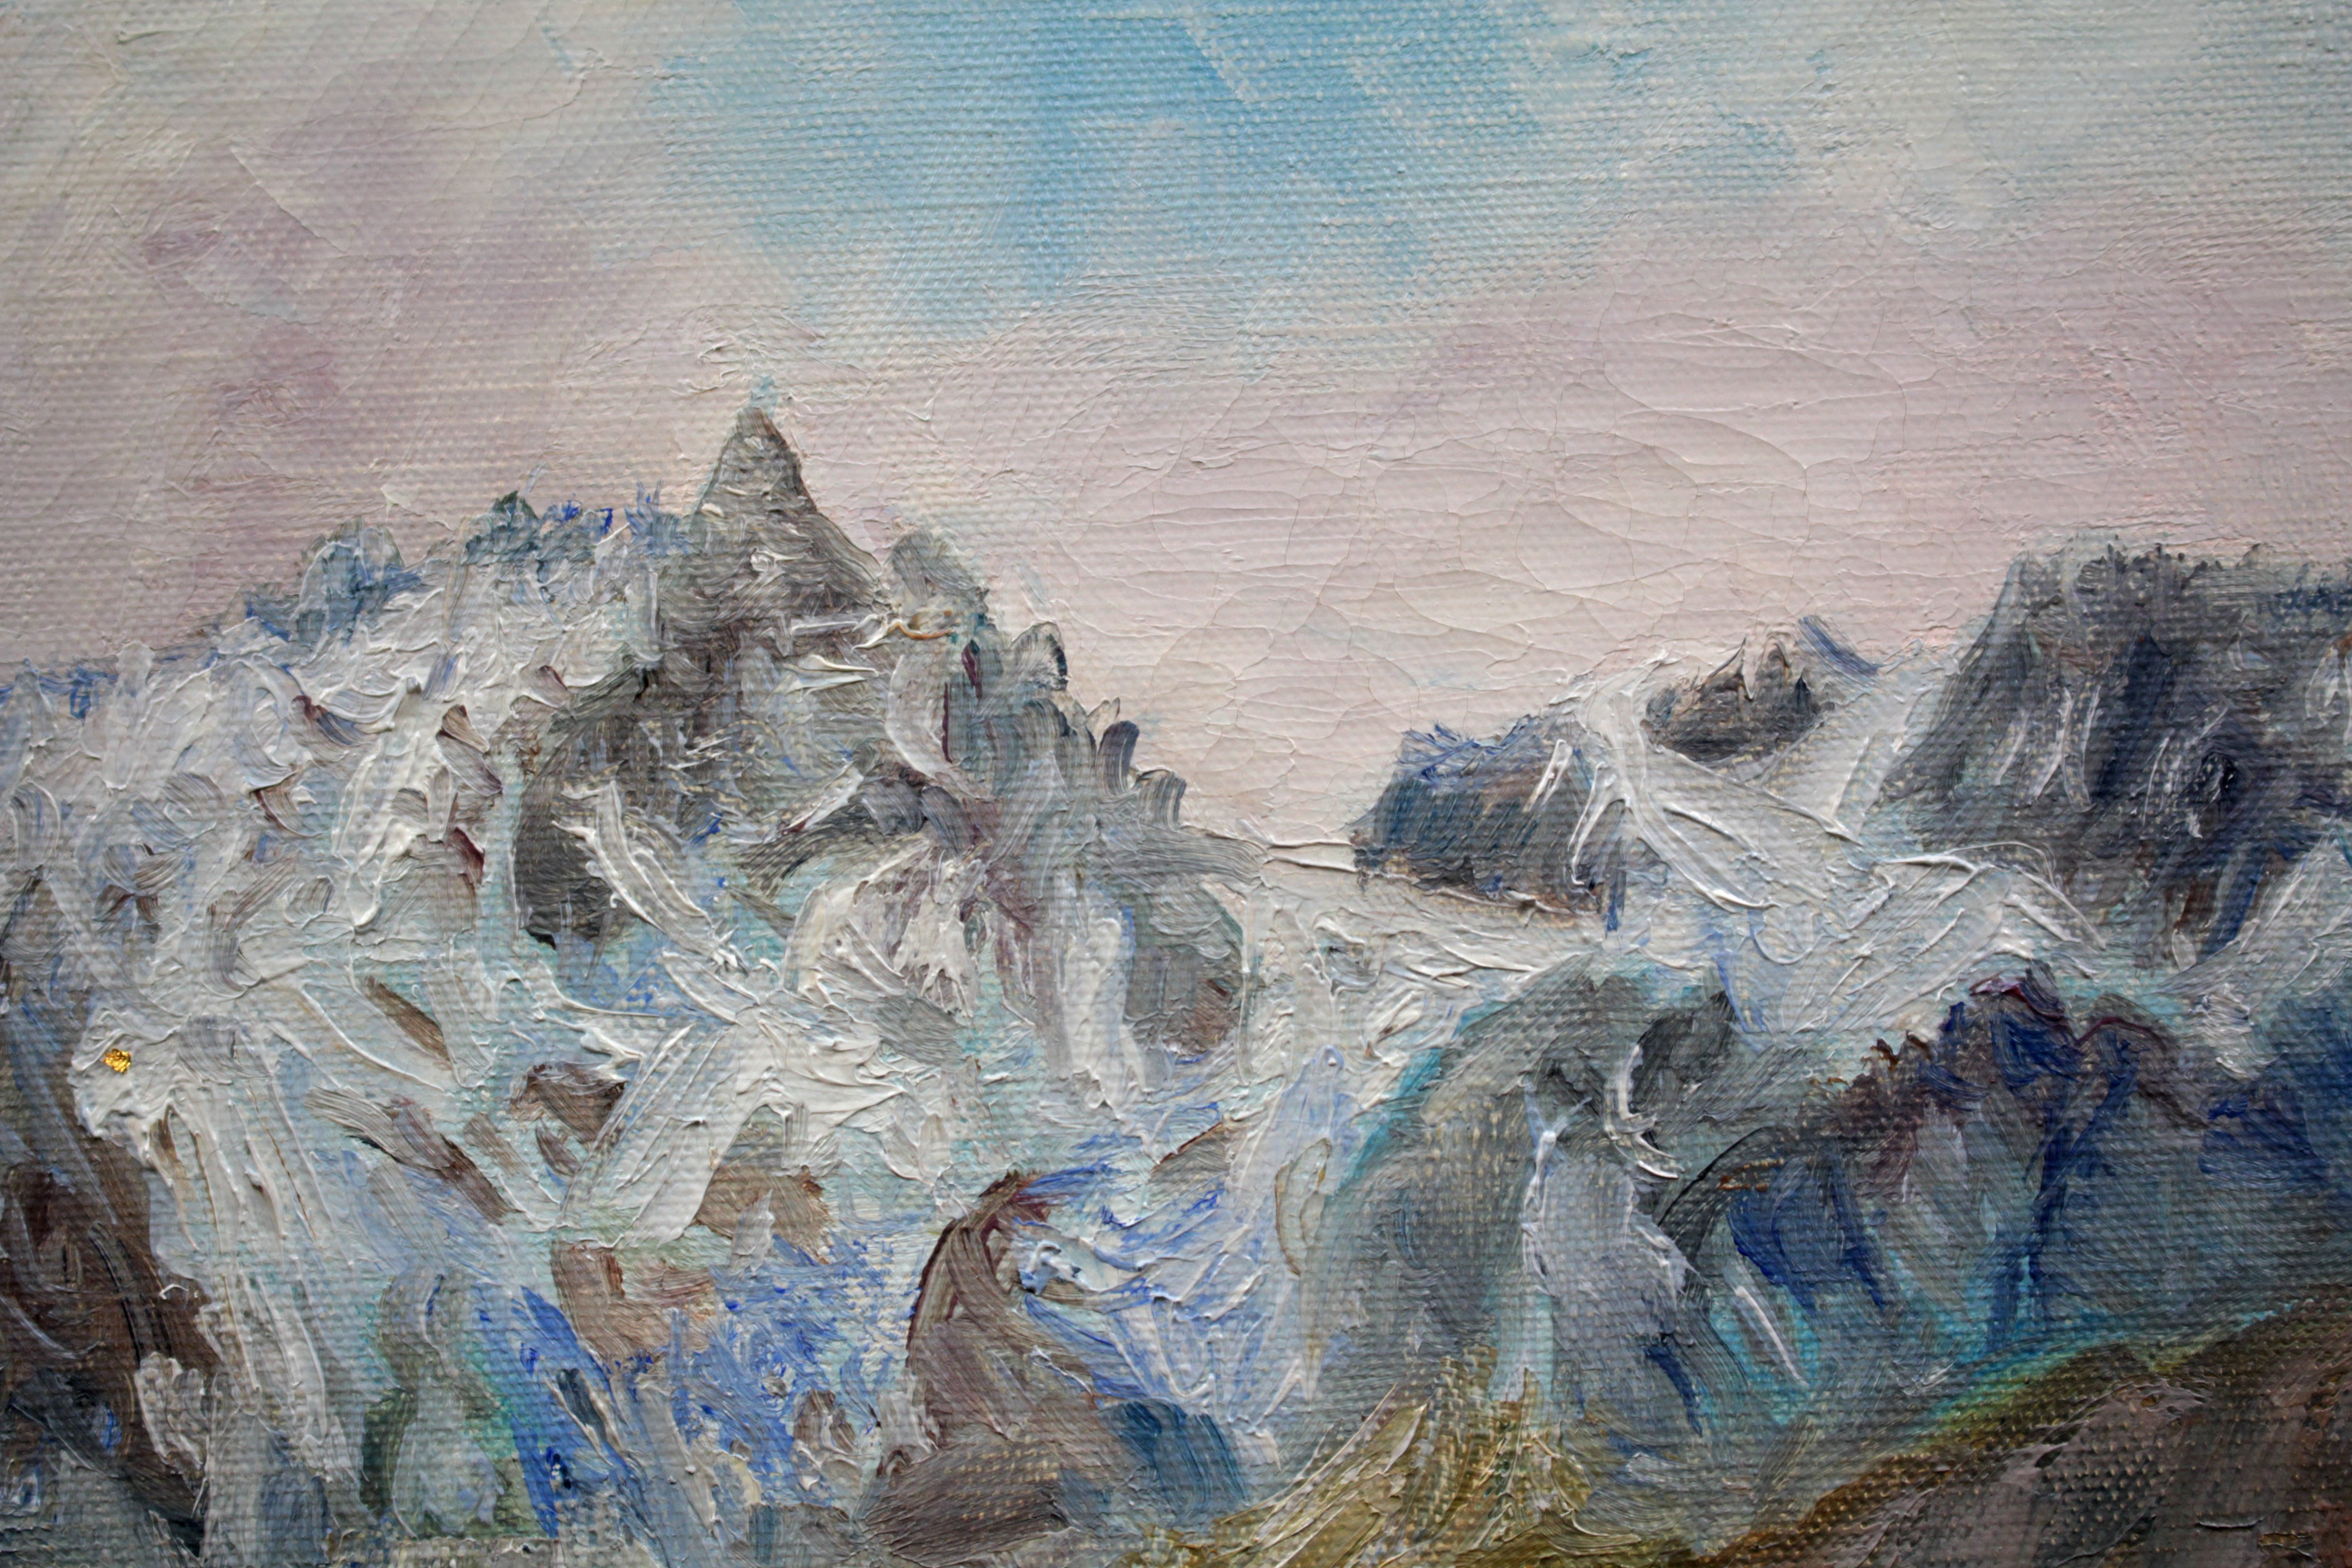 森 真道 『フランス風景 ドフィネの山村』 油彩画 - 北海道画廊